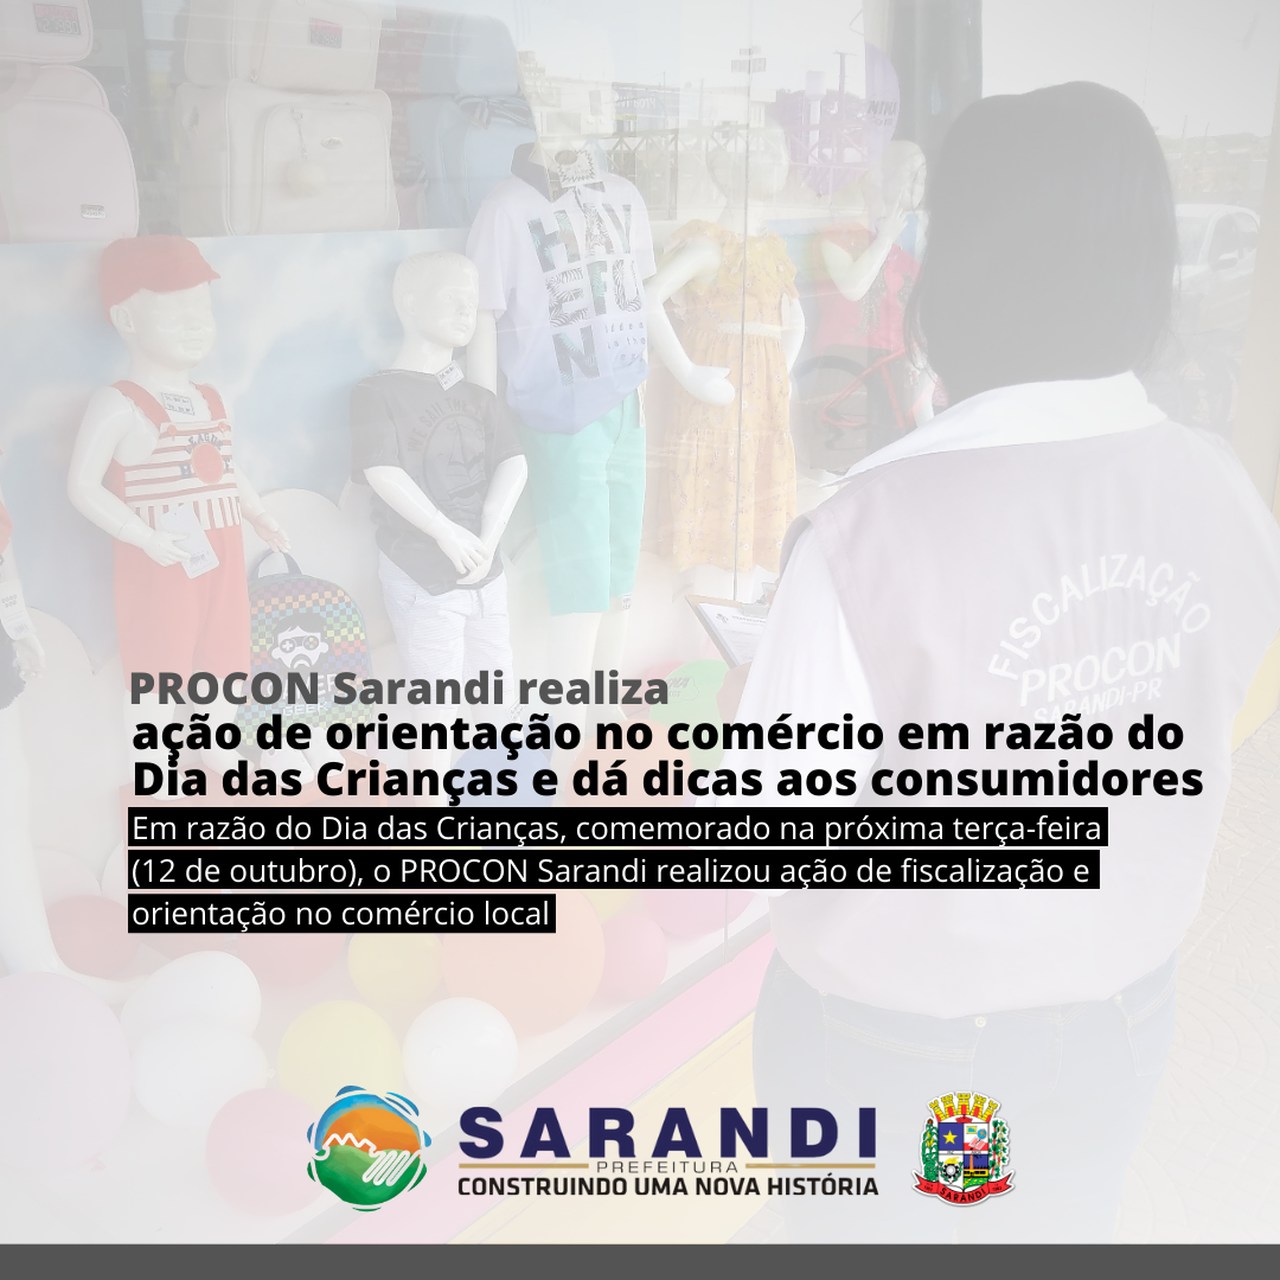 PROCON Sarandi realiza ação de orientação no comércio em razão do Dia das Crianças e dá dicas aos consumidores